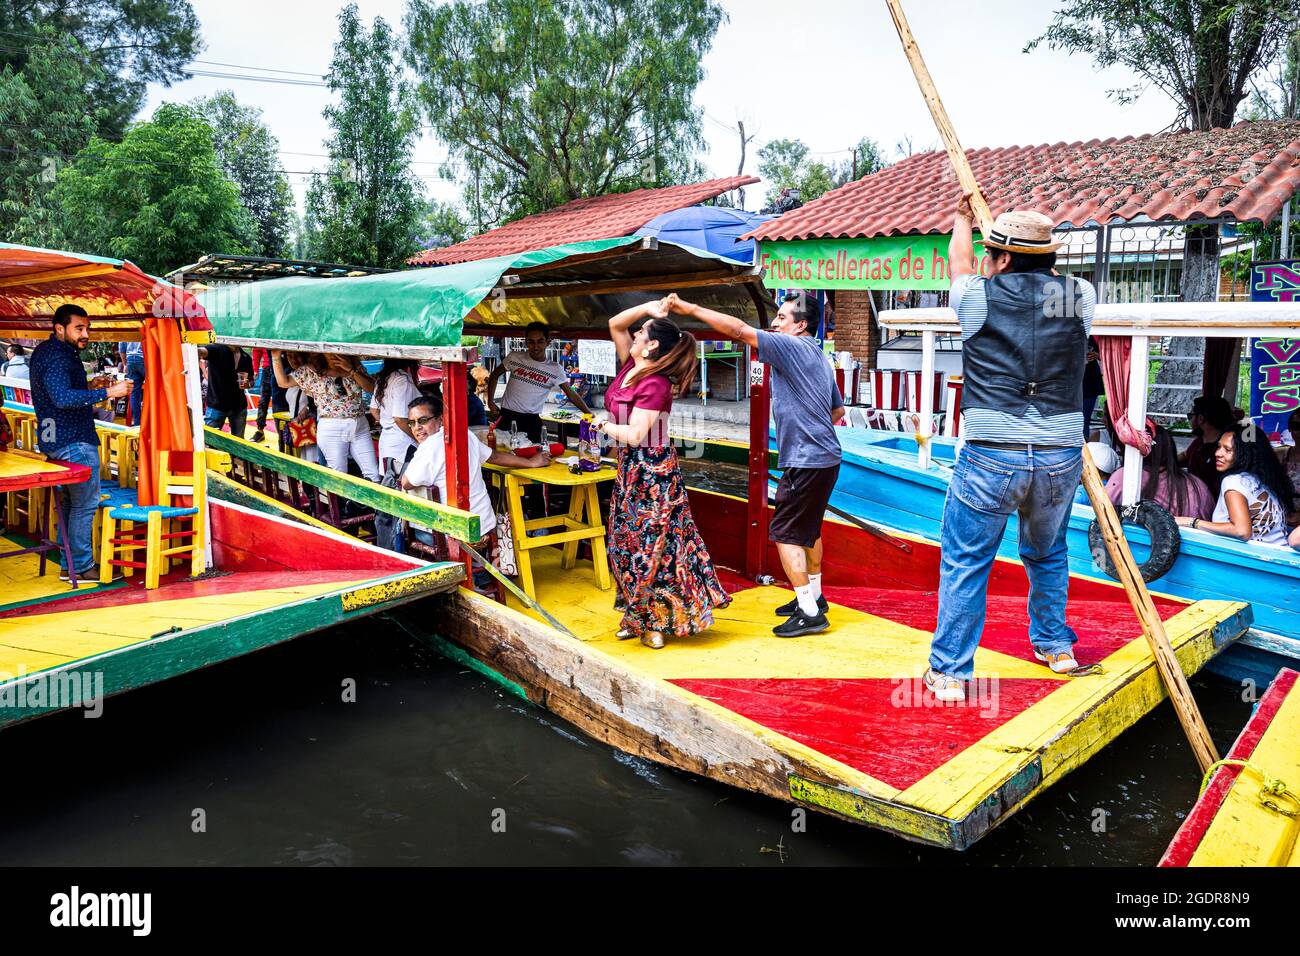 Un couple danse spontanément sur l'un des bateaux de Xochimilco, Mexico, Mexique. Banque D'Images